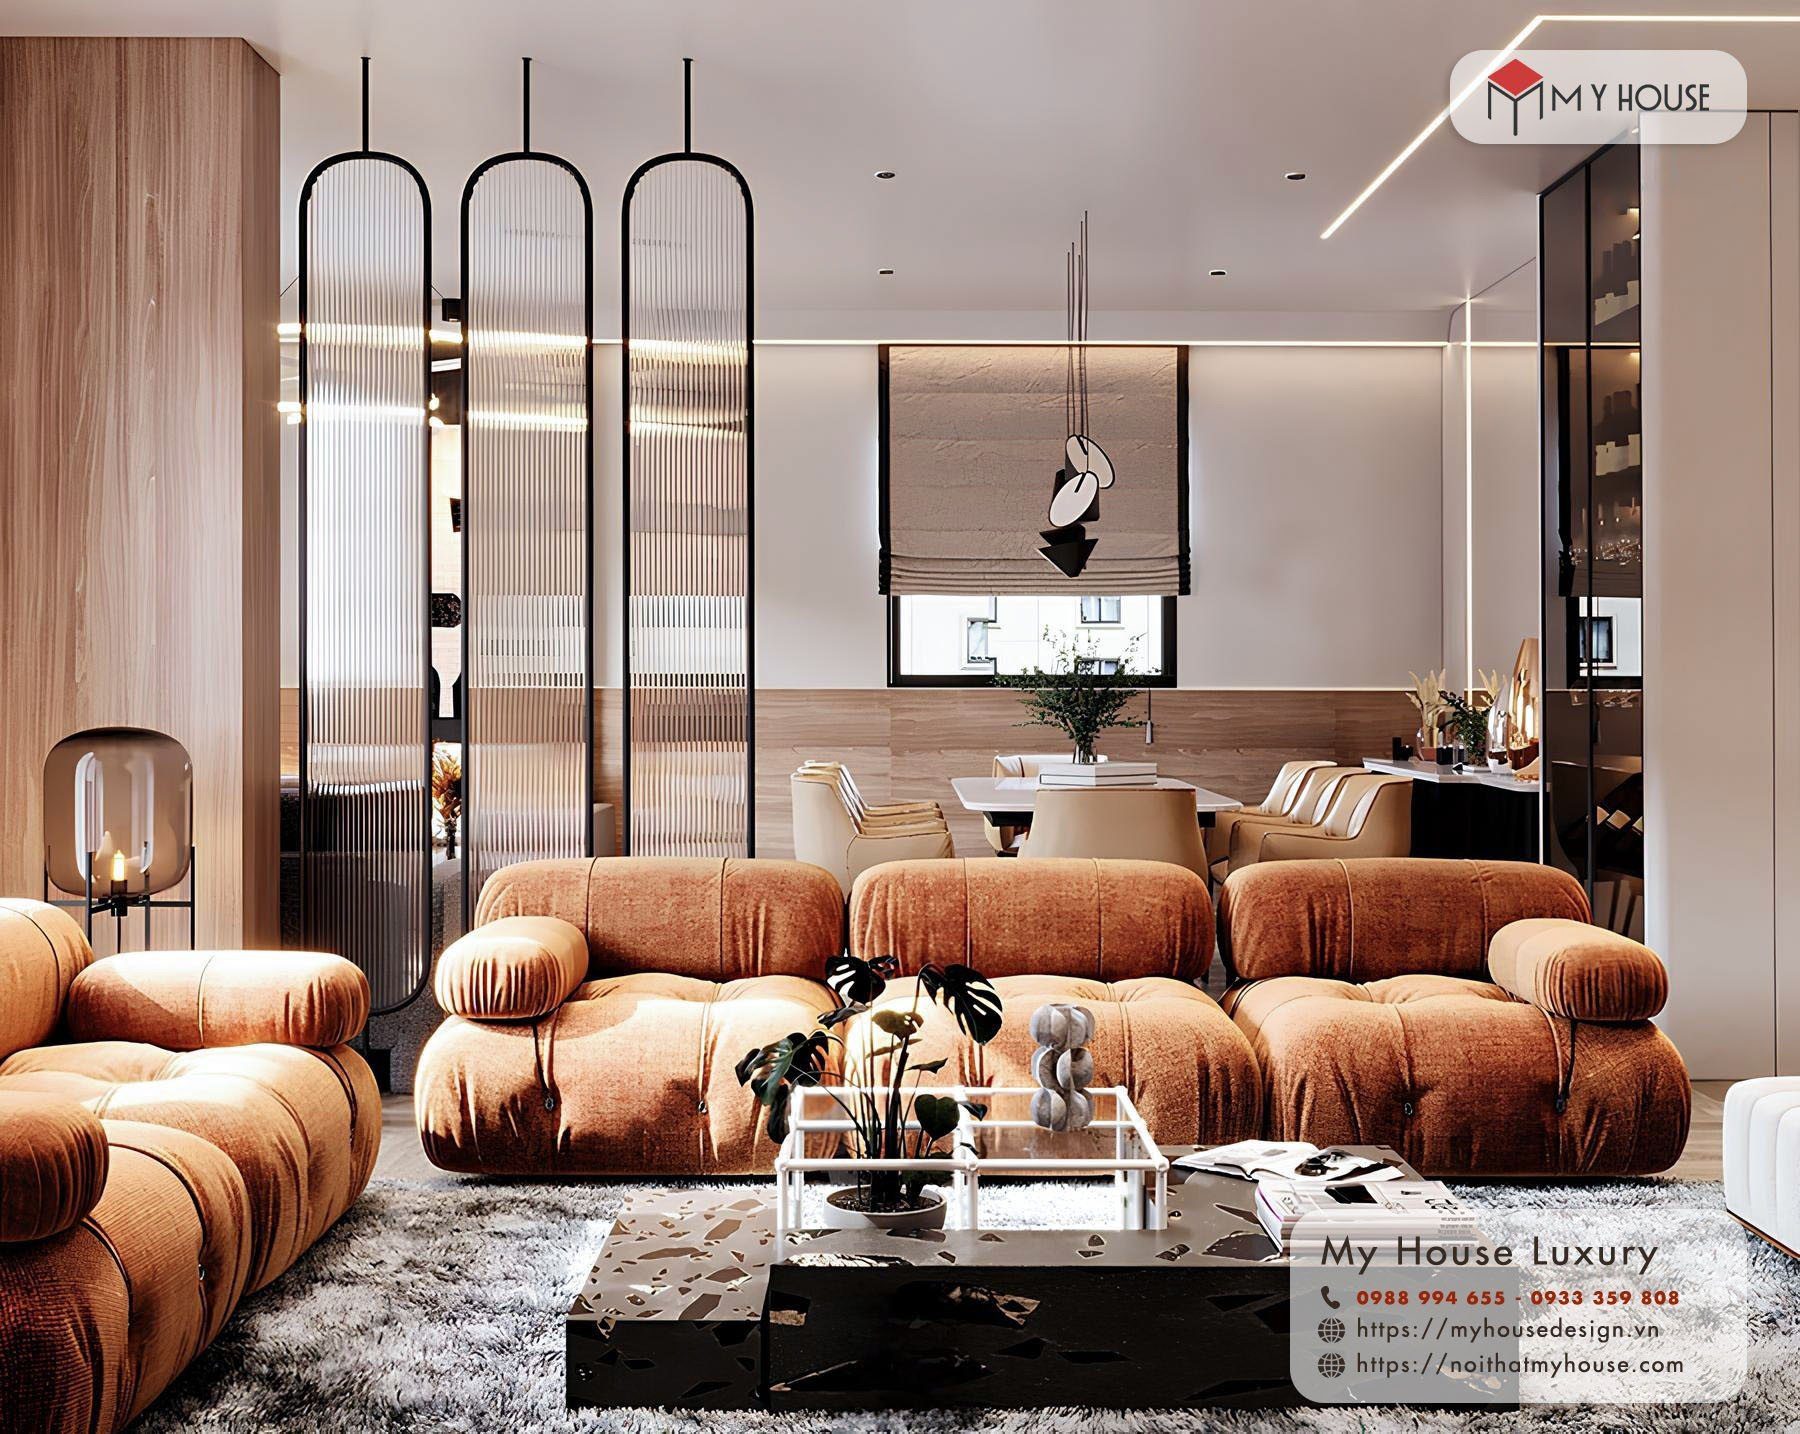 Mẫu thiết kế phòng khách chung cư phong cách Luxury